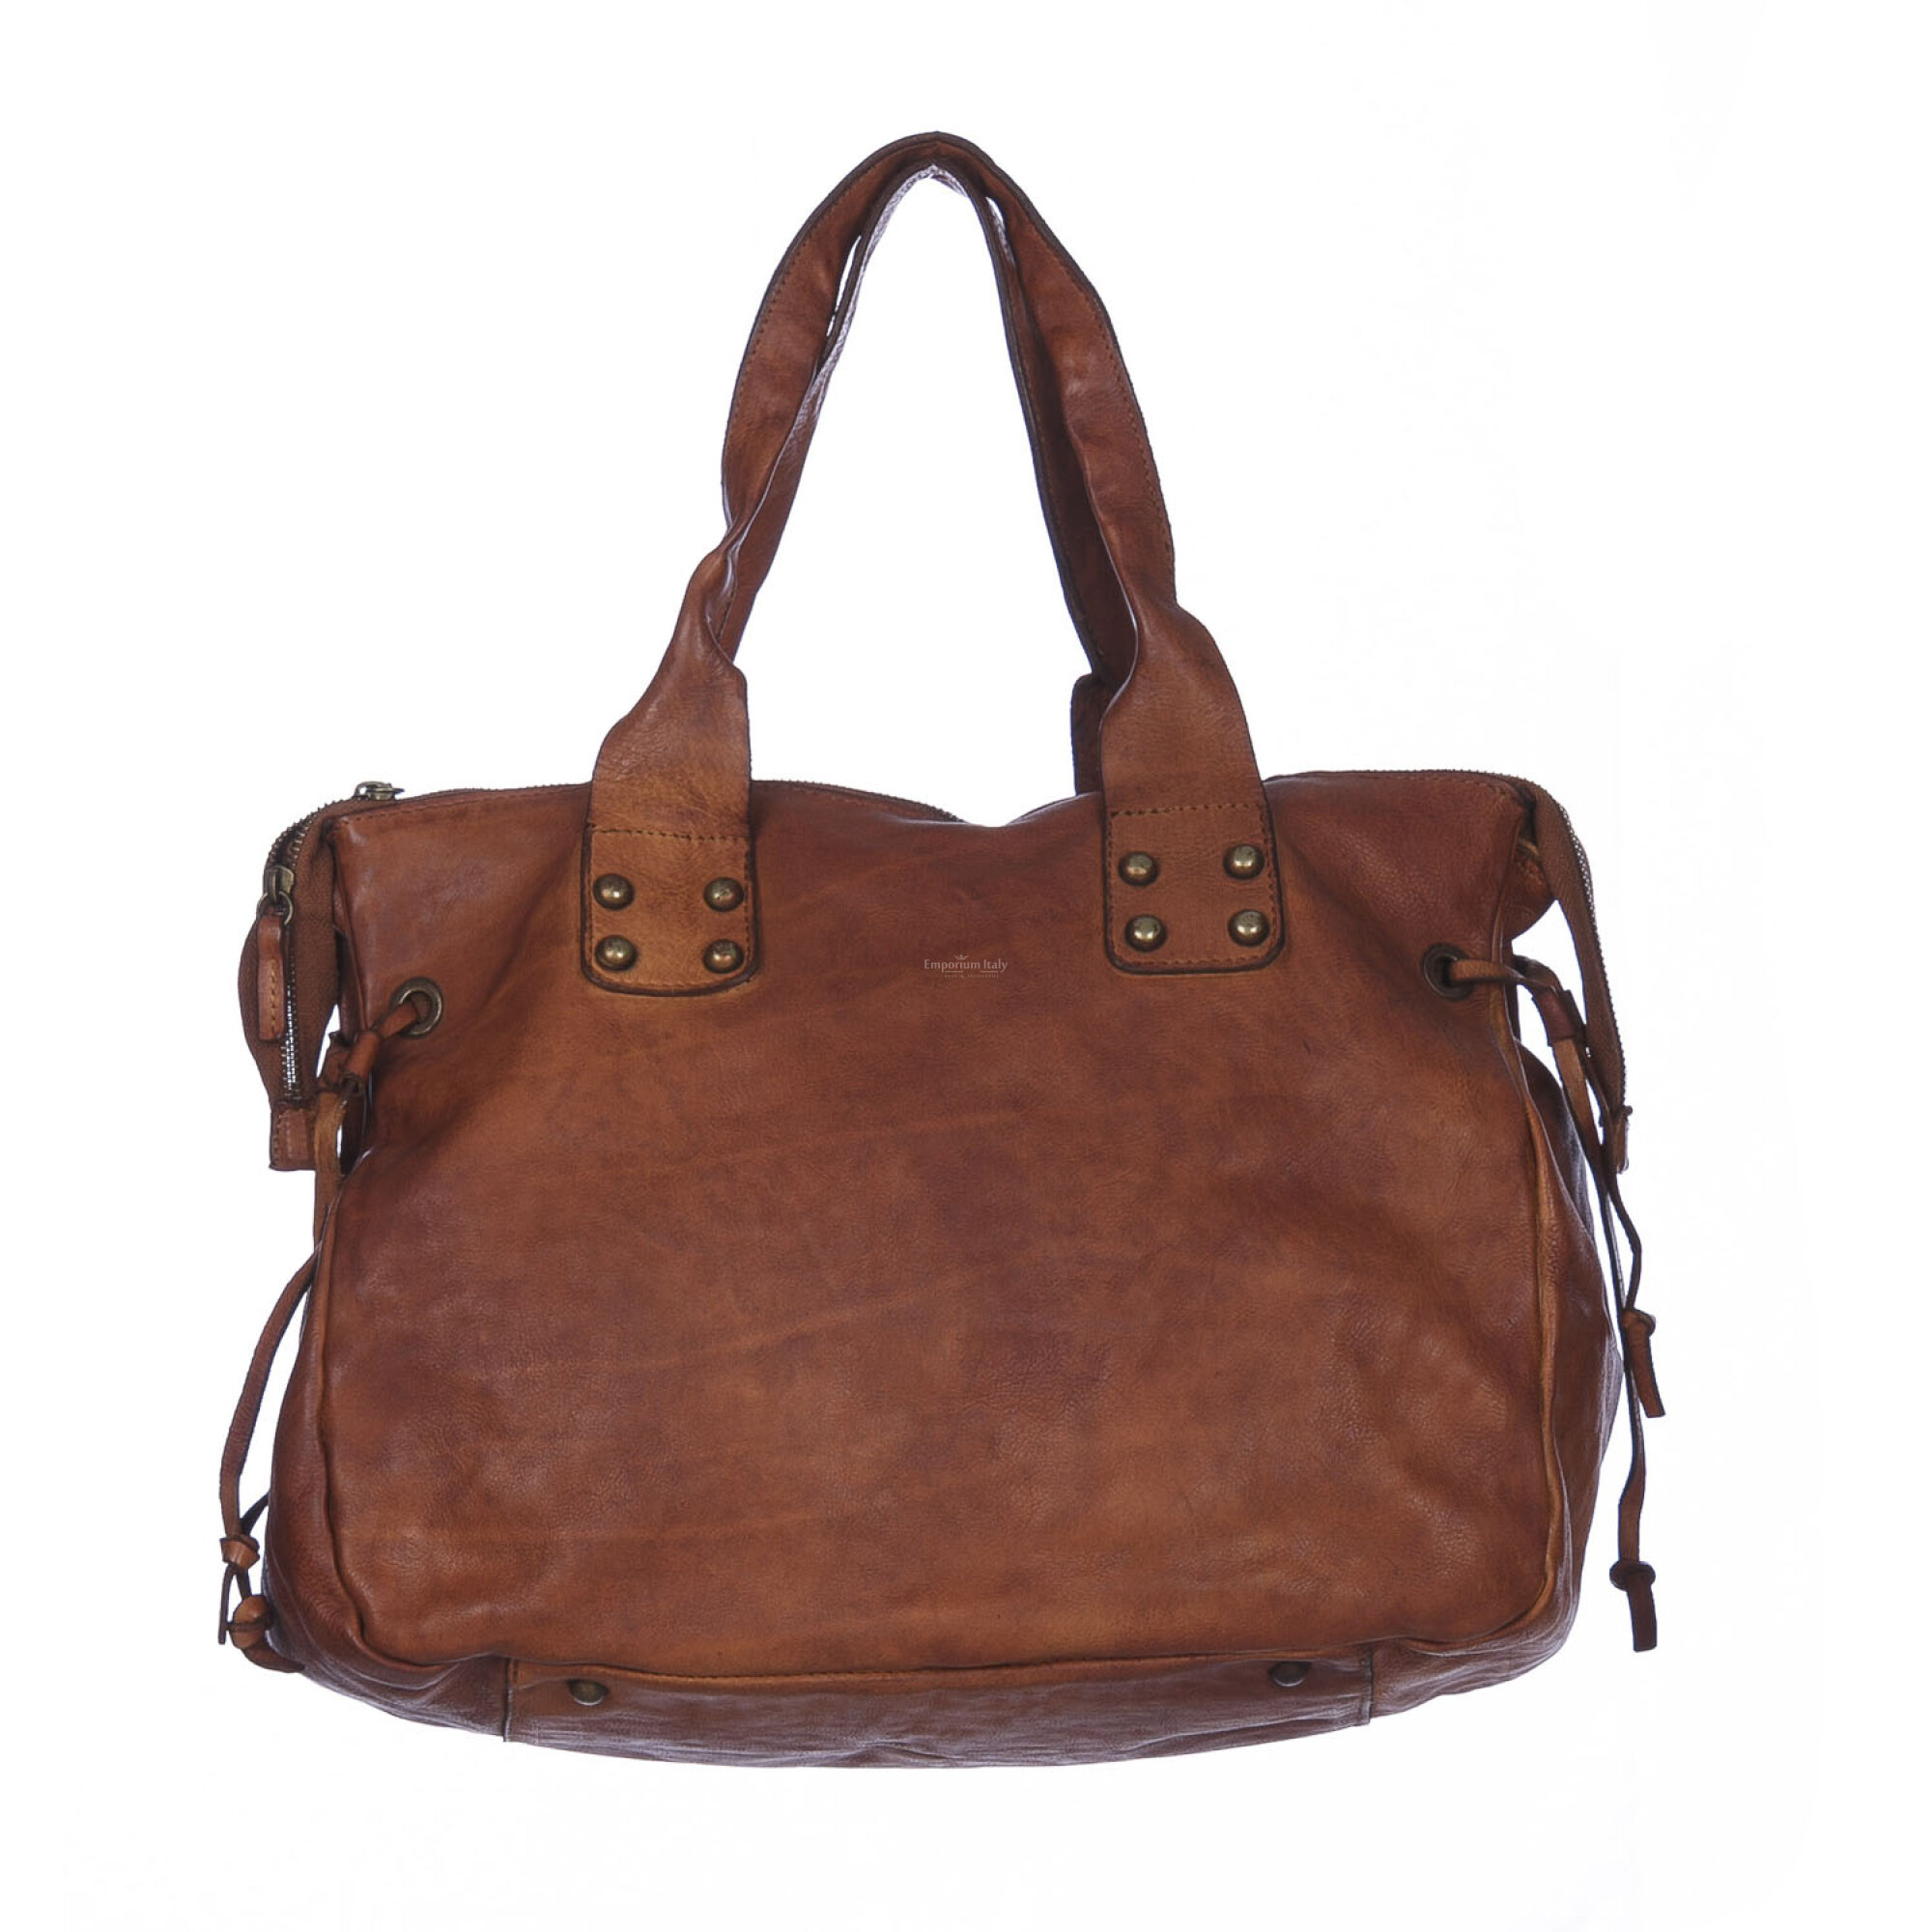 Women's Shoulder Bag in Vintage Leather color Dark Brown Seppia - Sguardo  line BSH183